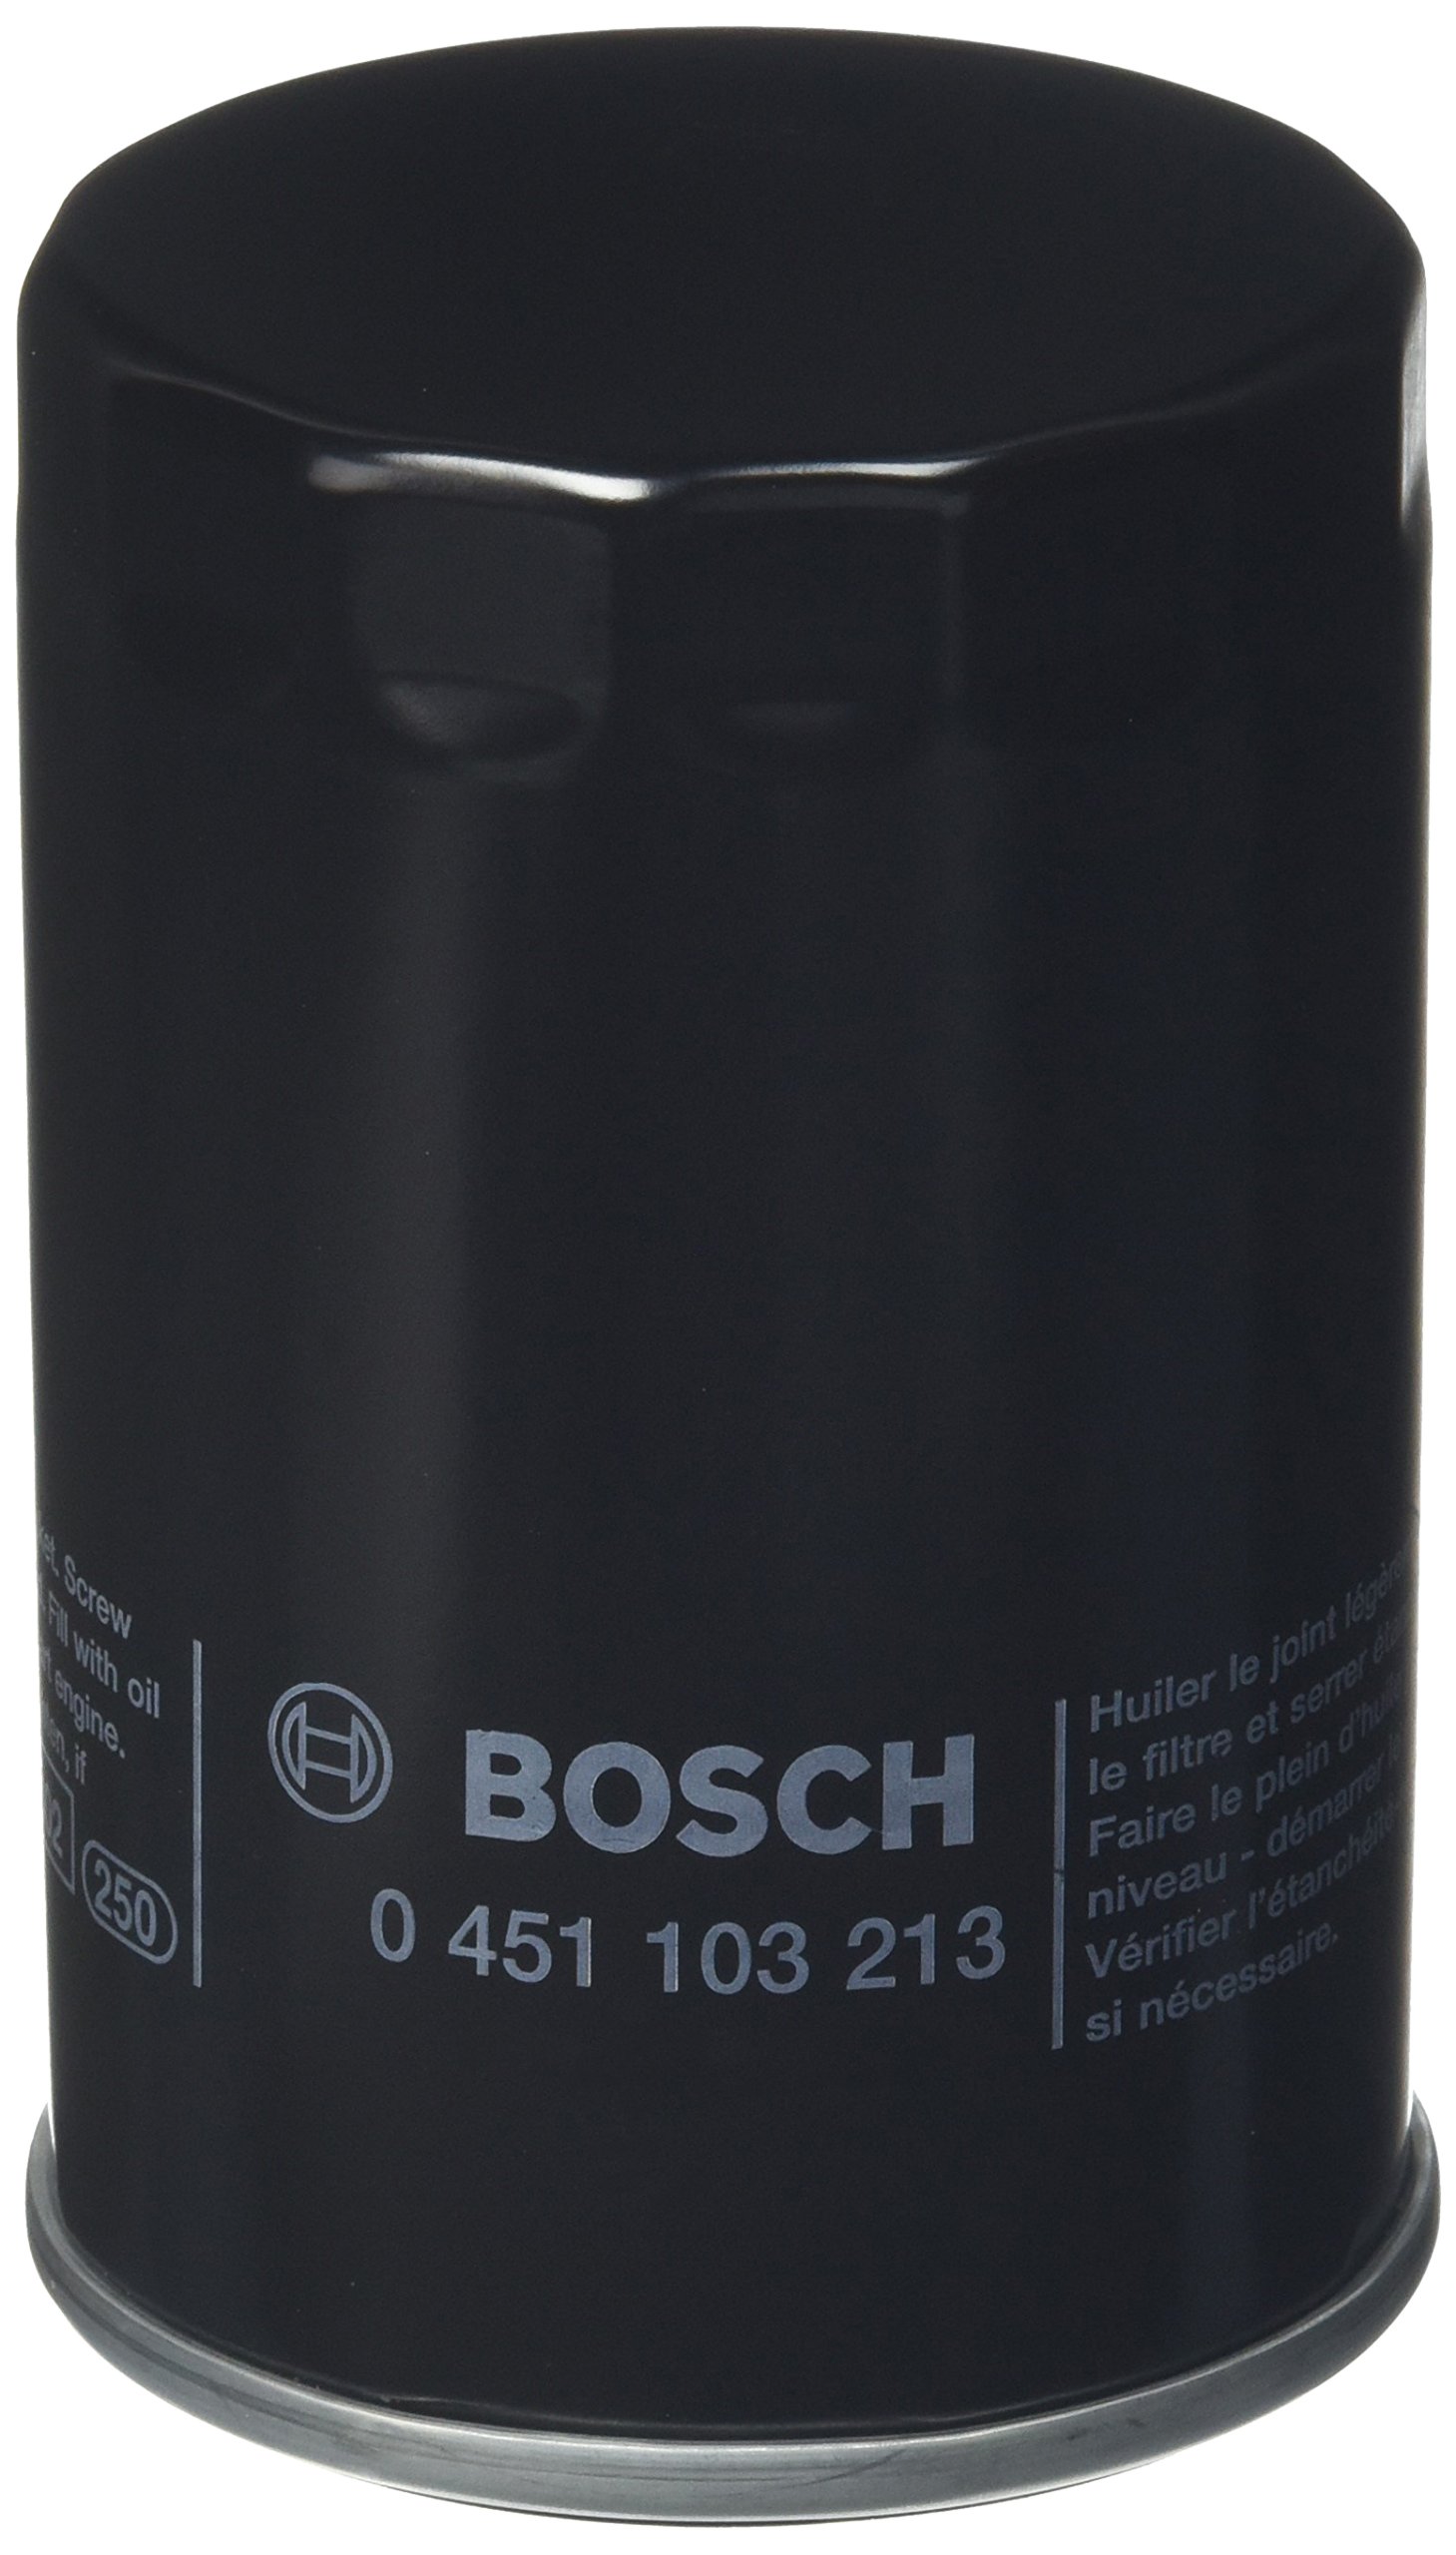 BOSCH(ボッシュ) オイルフィルター 輸入車用 OF-POR-2